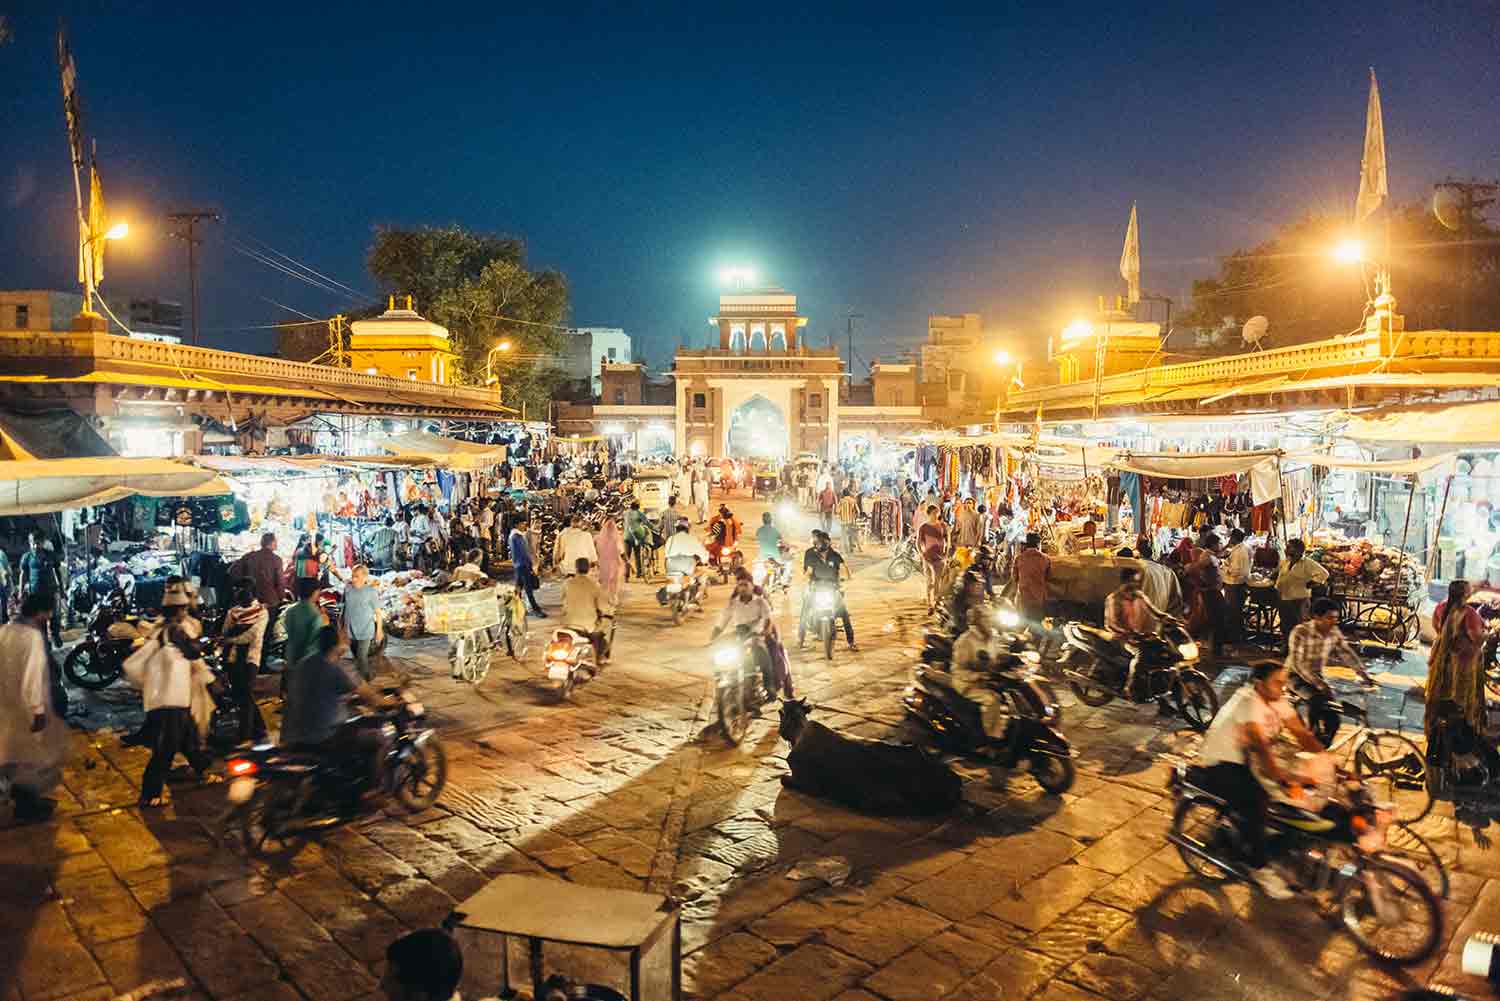 Sardar market in Jodhpur India (Copy)